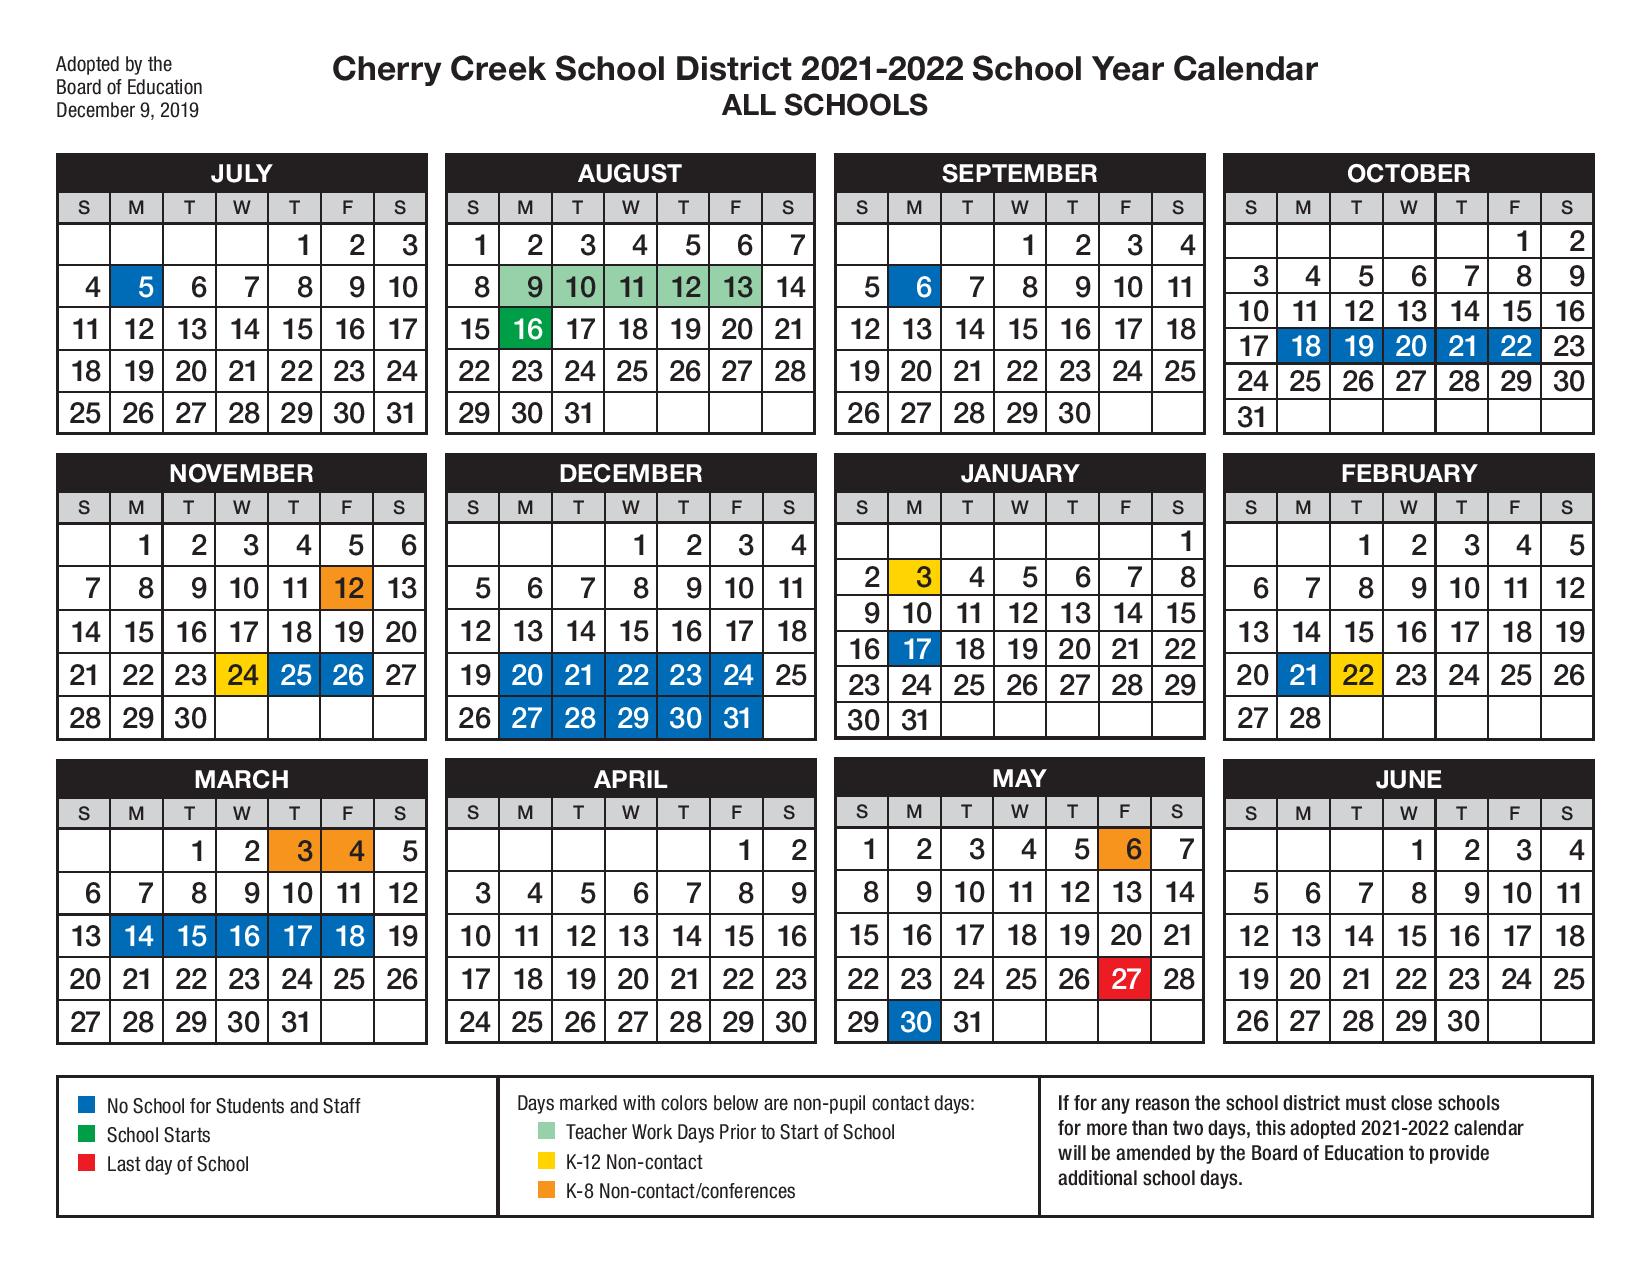 Cherry Creek School District Calendar 20222023 Summer 2022 calendar